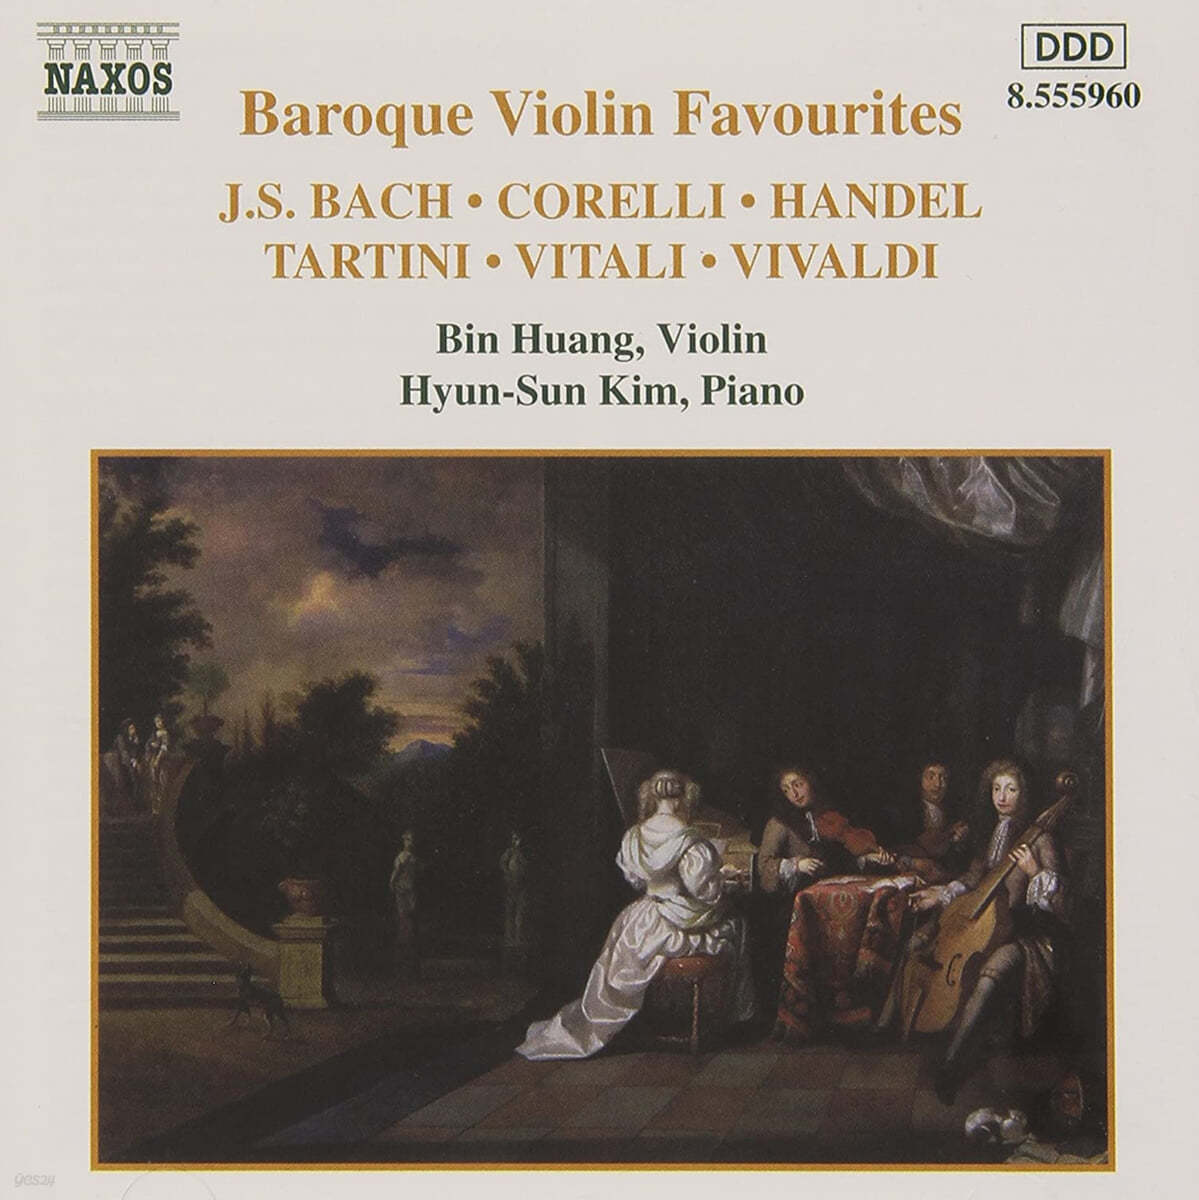 Bin Huang / 김현선 (Hyun-Sun Kim) - 유명 바로크 바이올린 작품집 (Baroque Violin Favourites) 